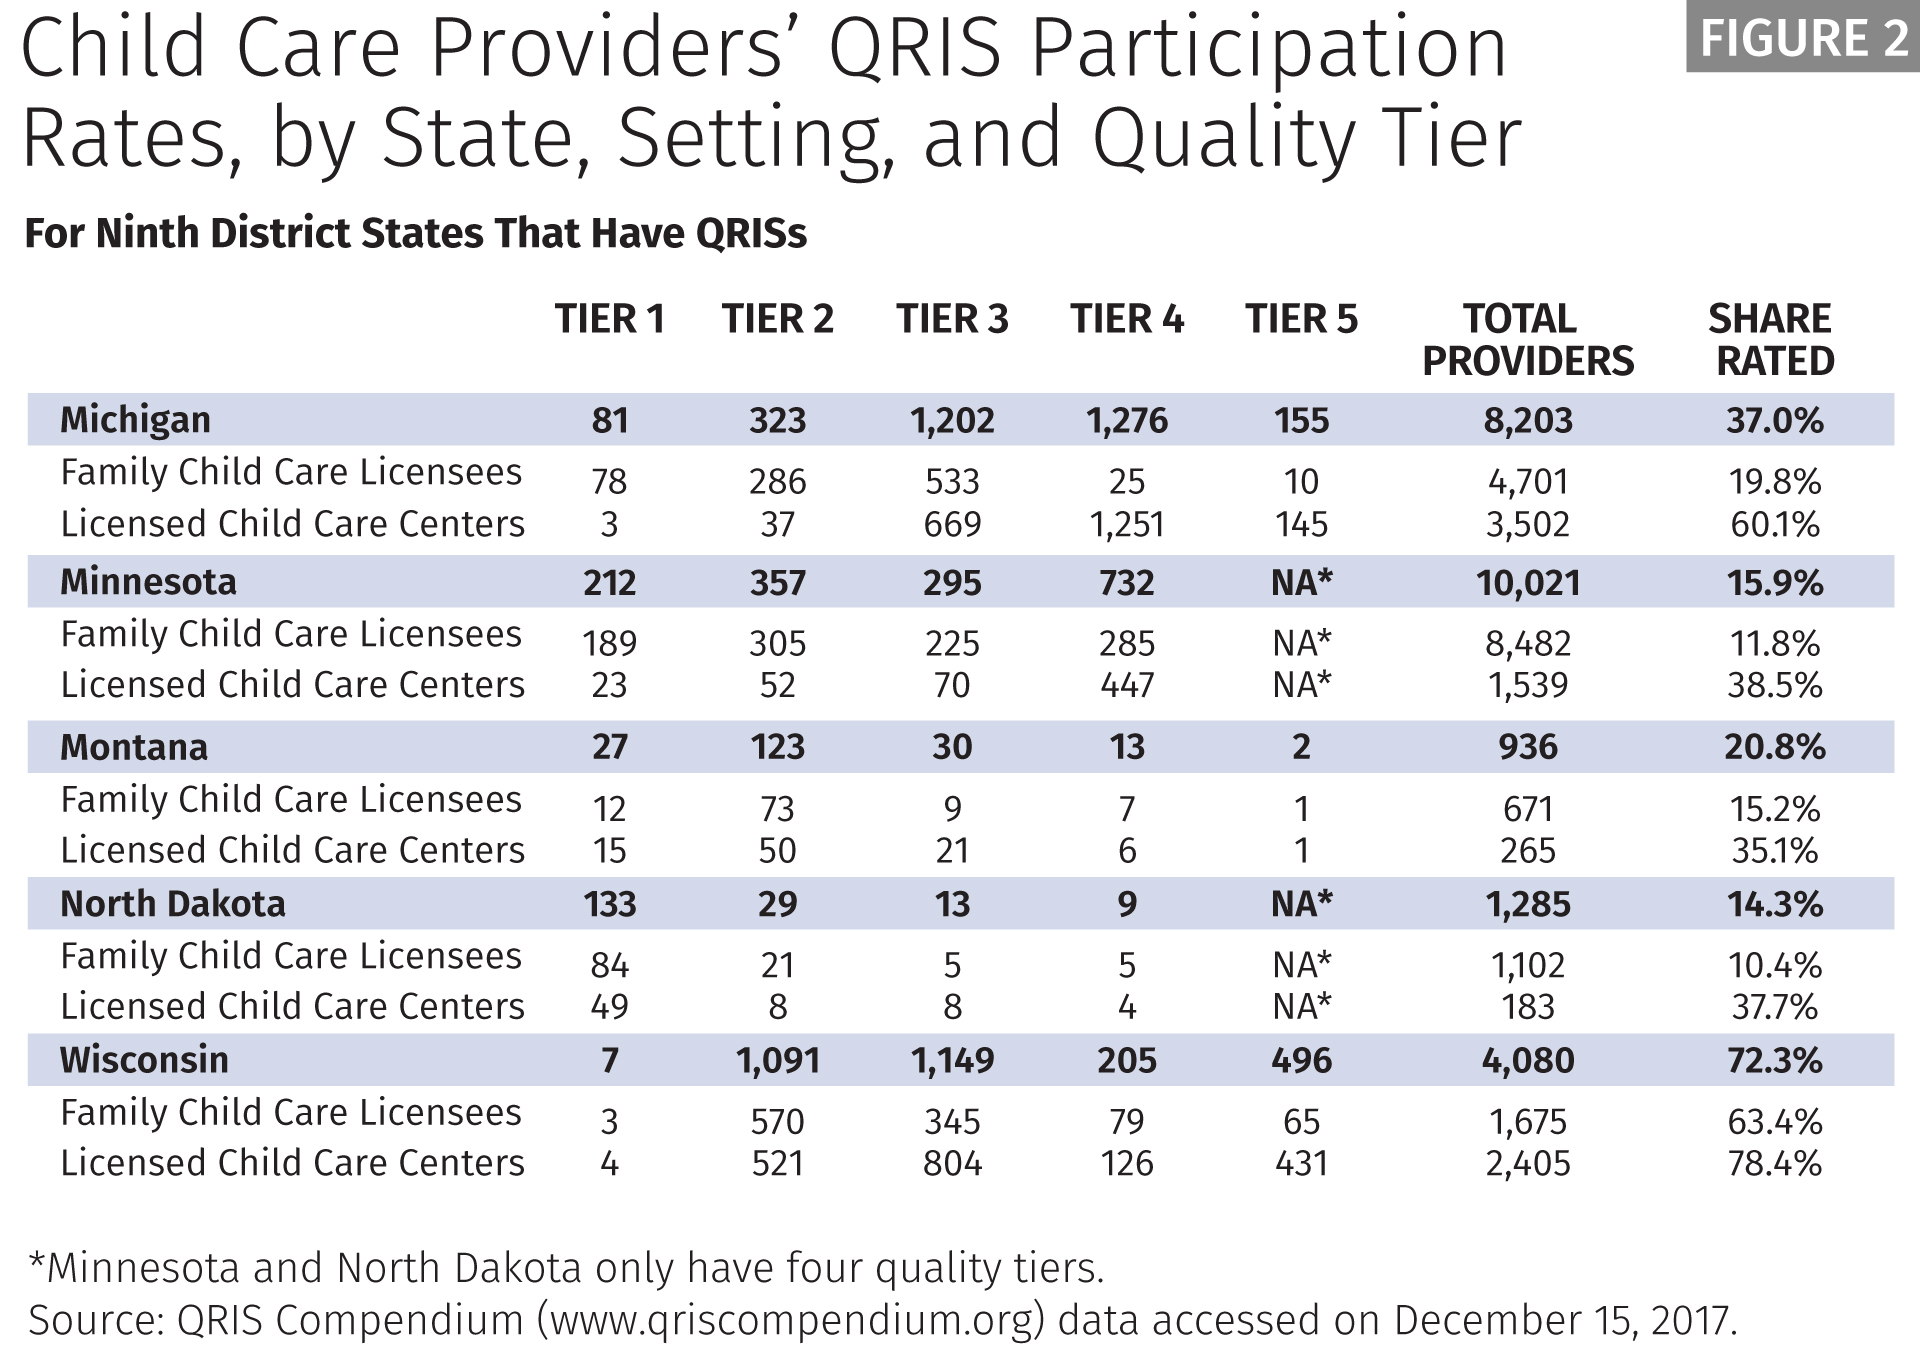 QRIS Participation Rates Table